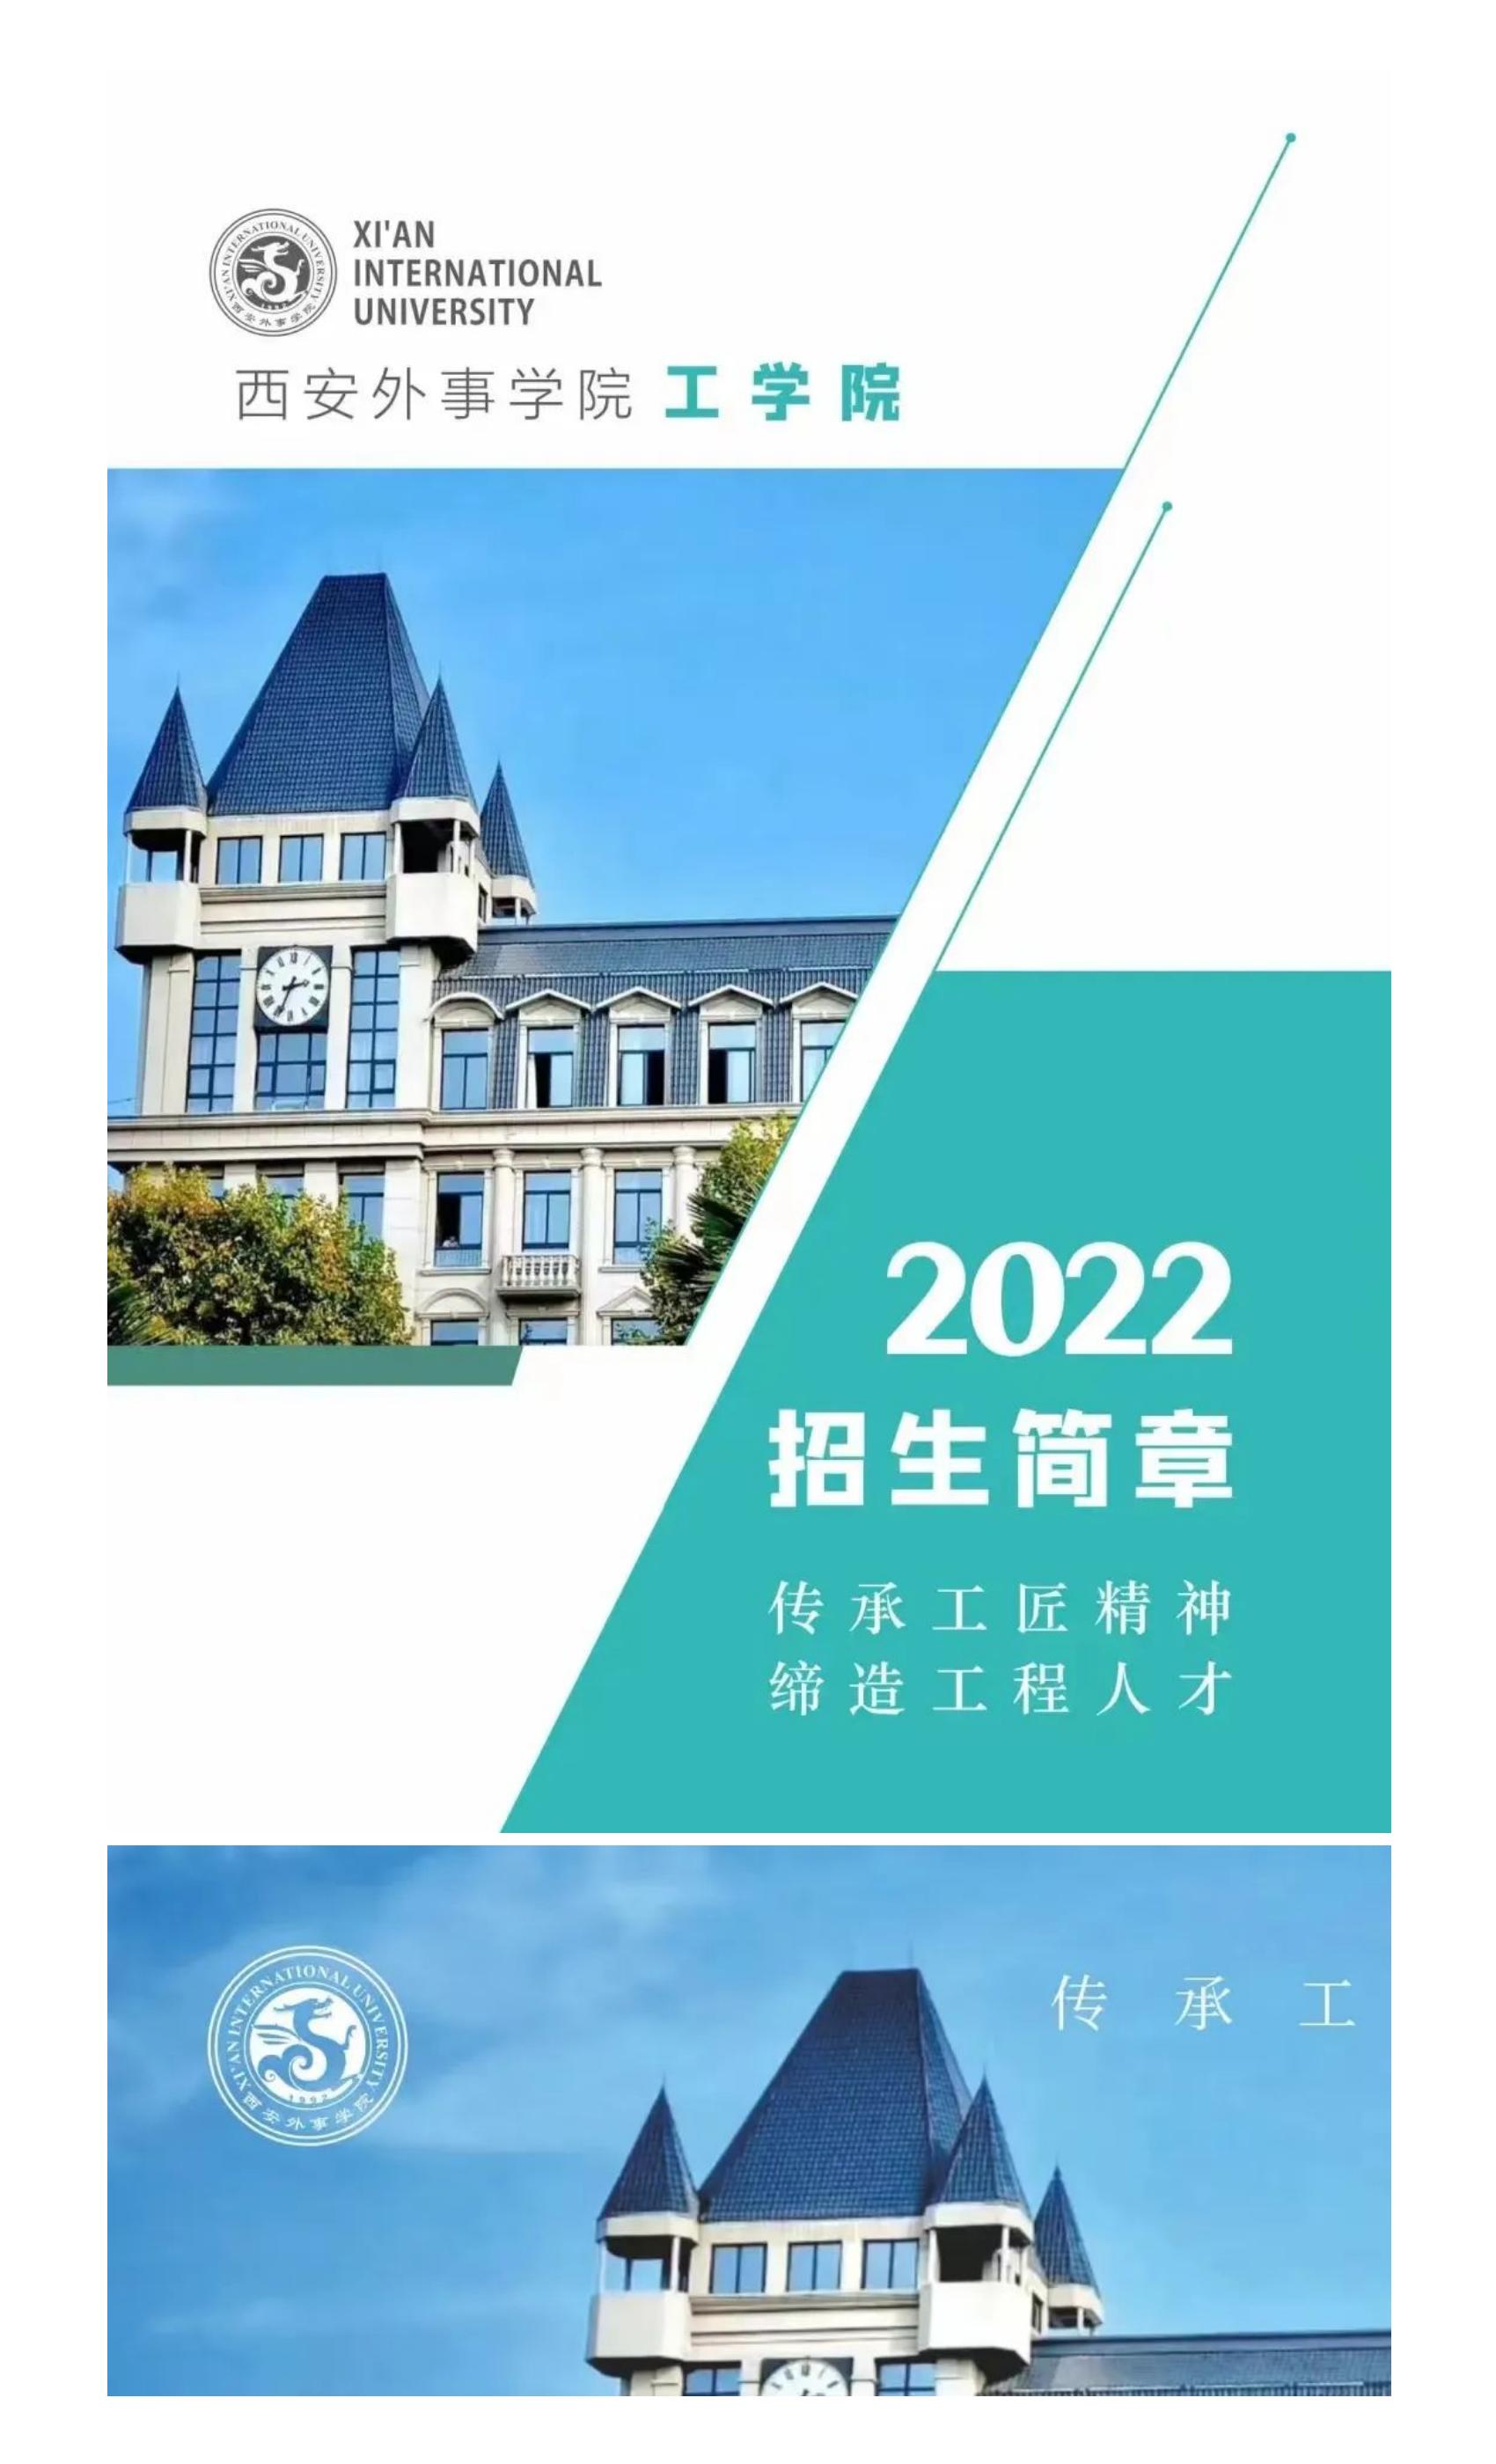 西安外事学院工学院2022招生简章_01.jpg